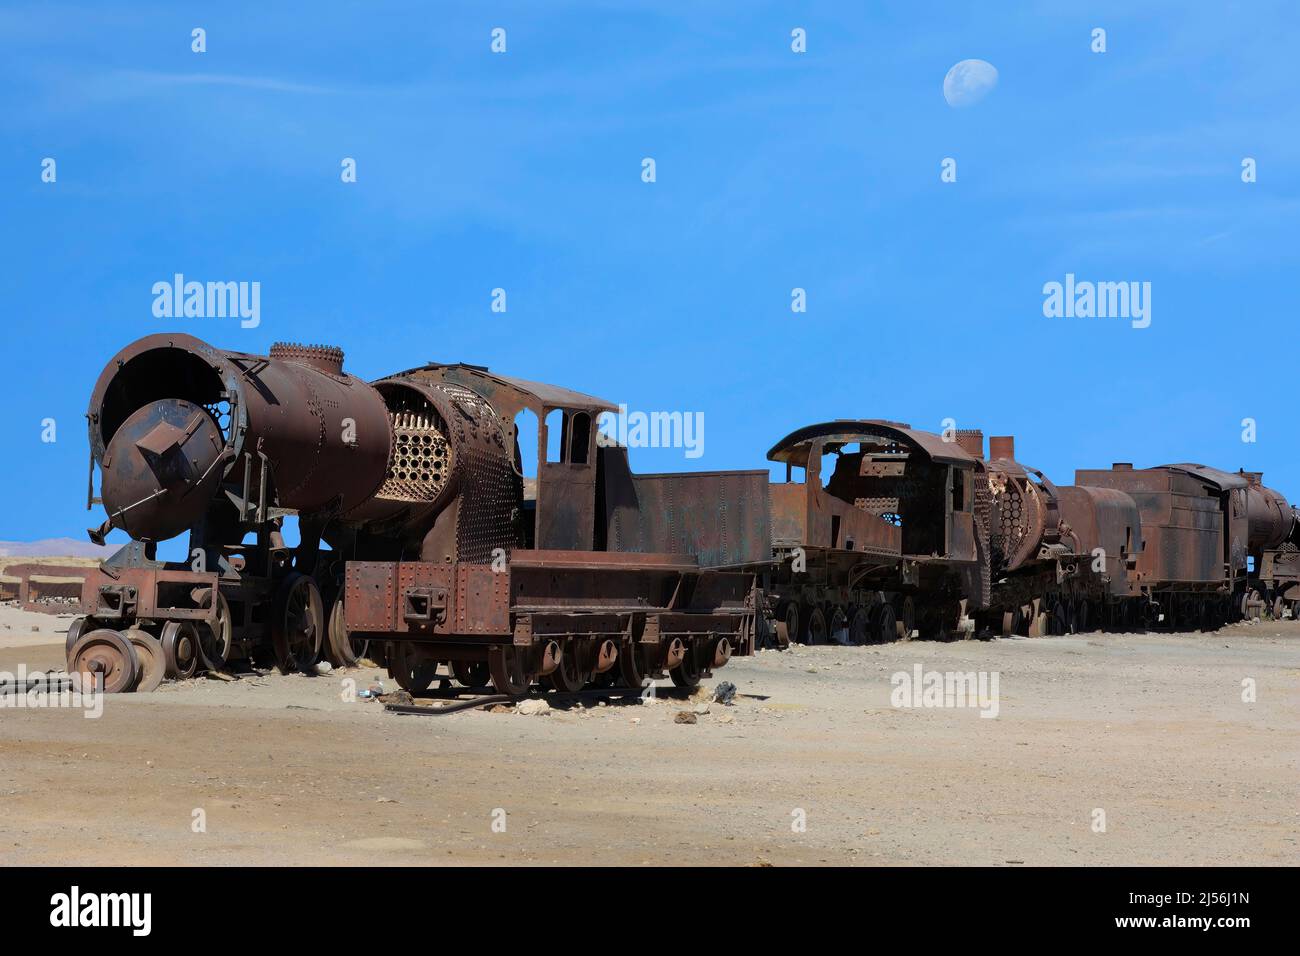 Salar de Uyuni, Bolivia, train grave or cemetery Stock Photo